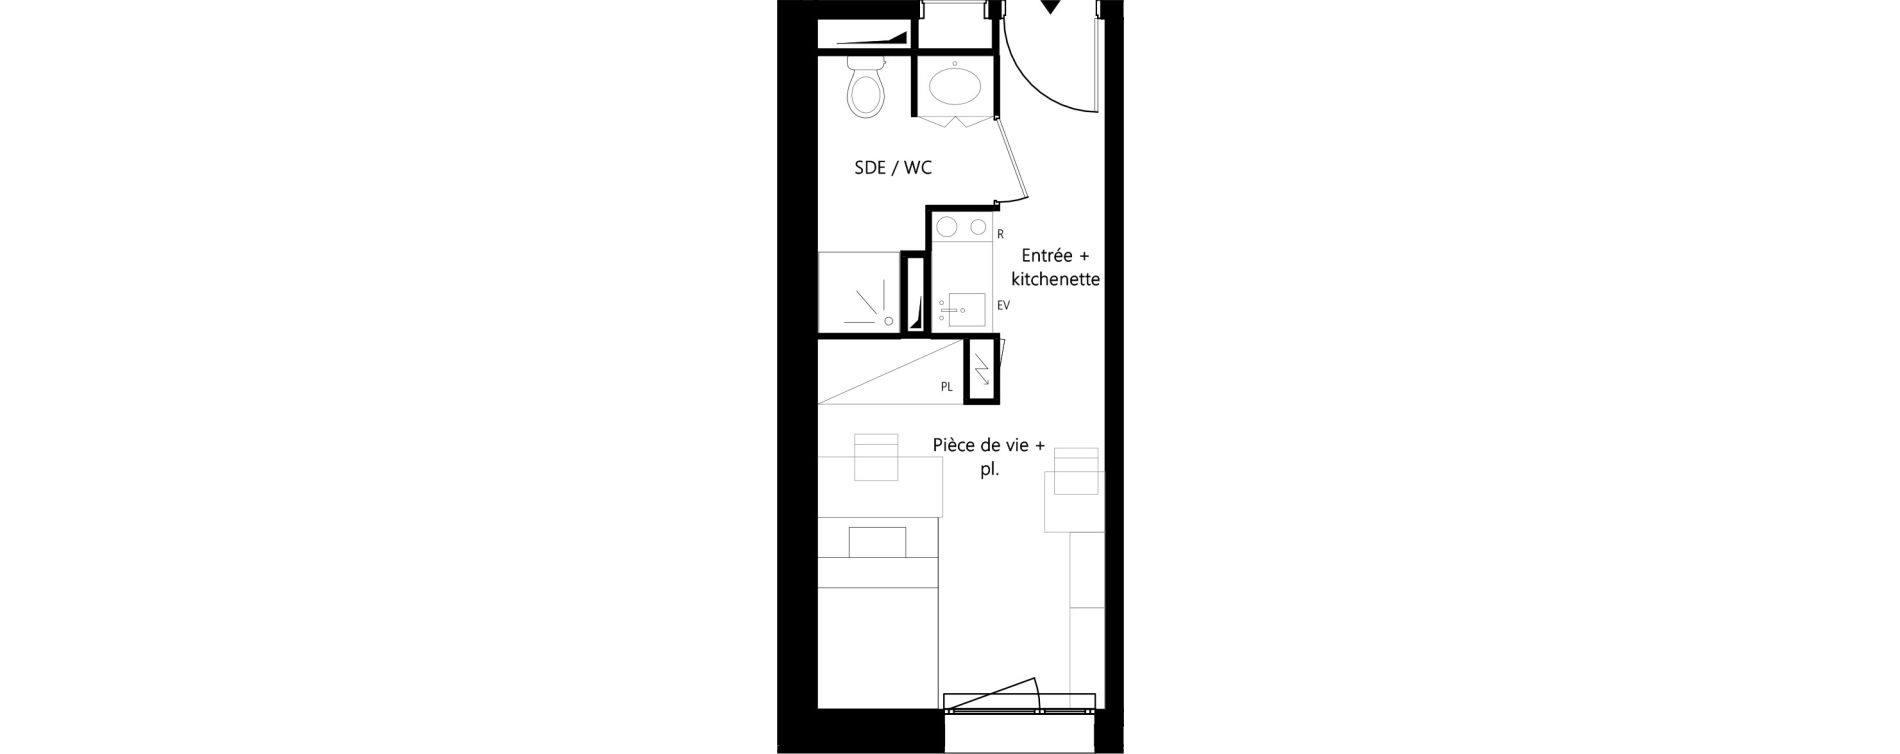 Appartement T1 meubl&eacute; de 18,12 m2 &agrave; Montauban Villebourbon - gare